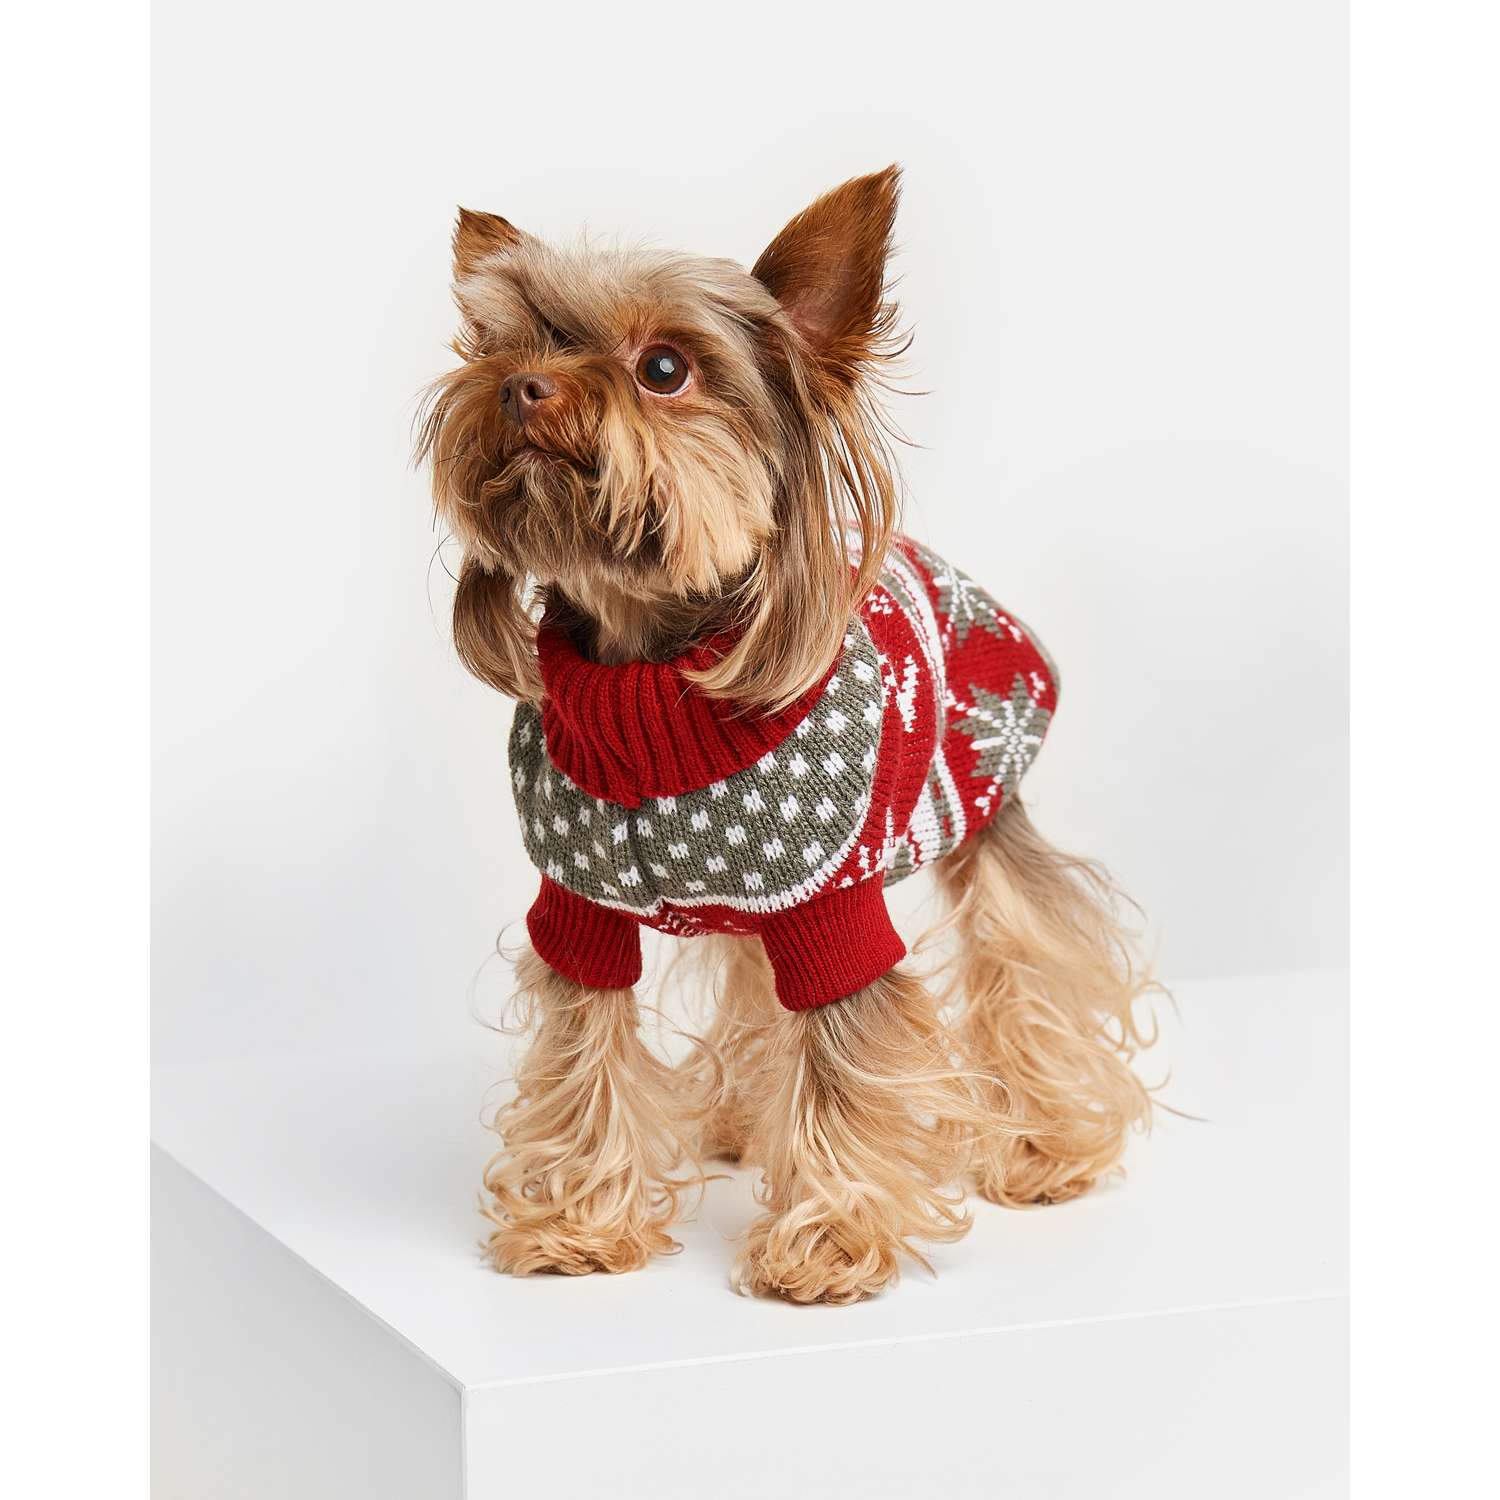 свитер для собаки - самый большой выбор товаров для домашних любимцев по всей Украине